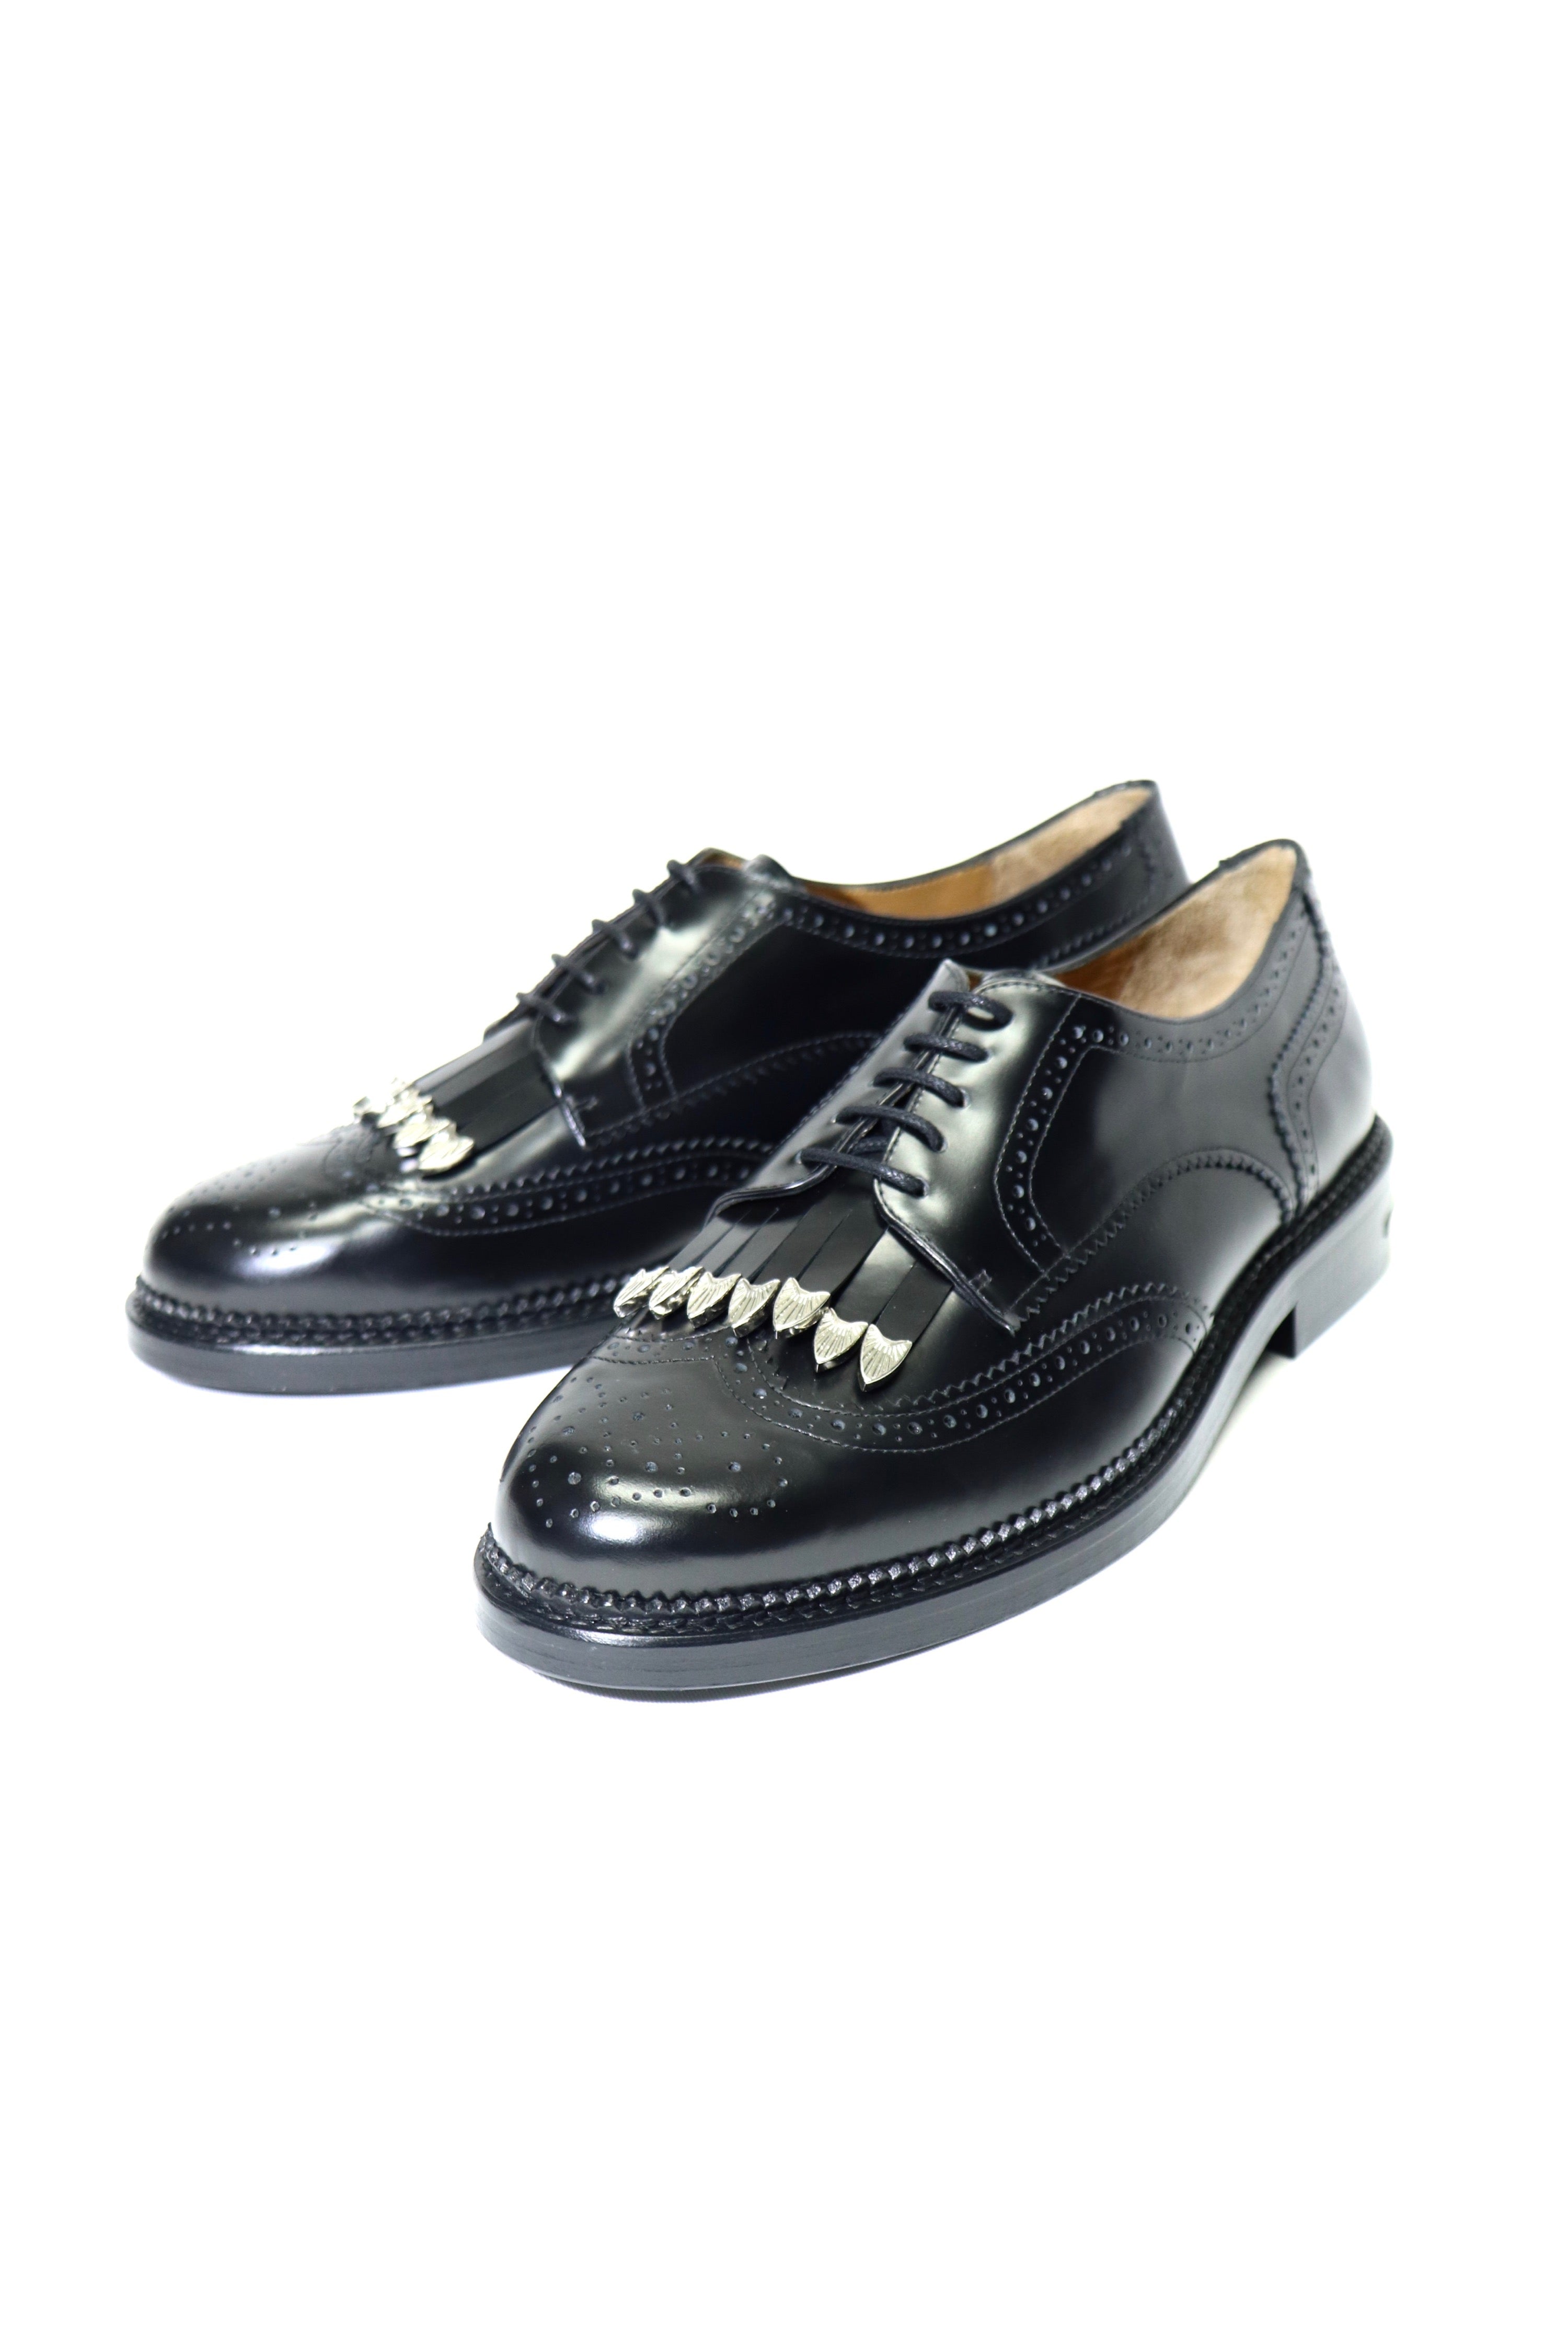 新品 TOGA VIRILIS Leather cutwork shoes 41